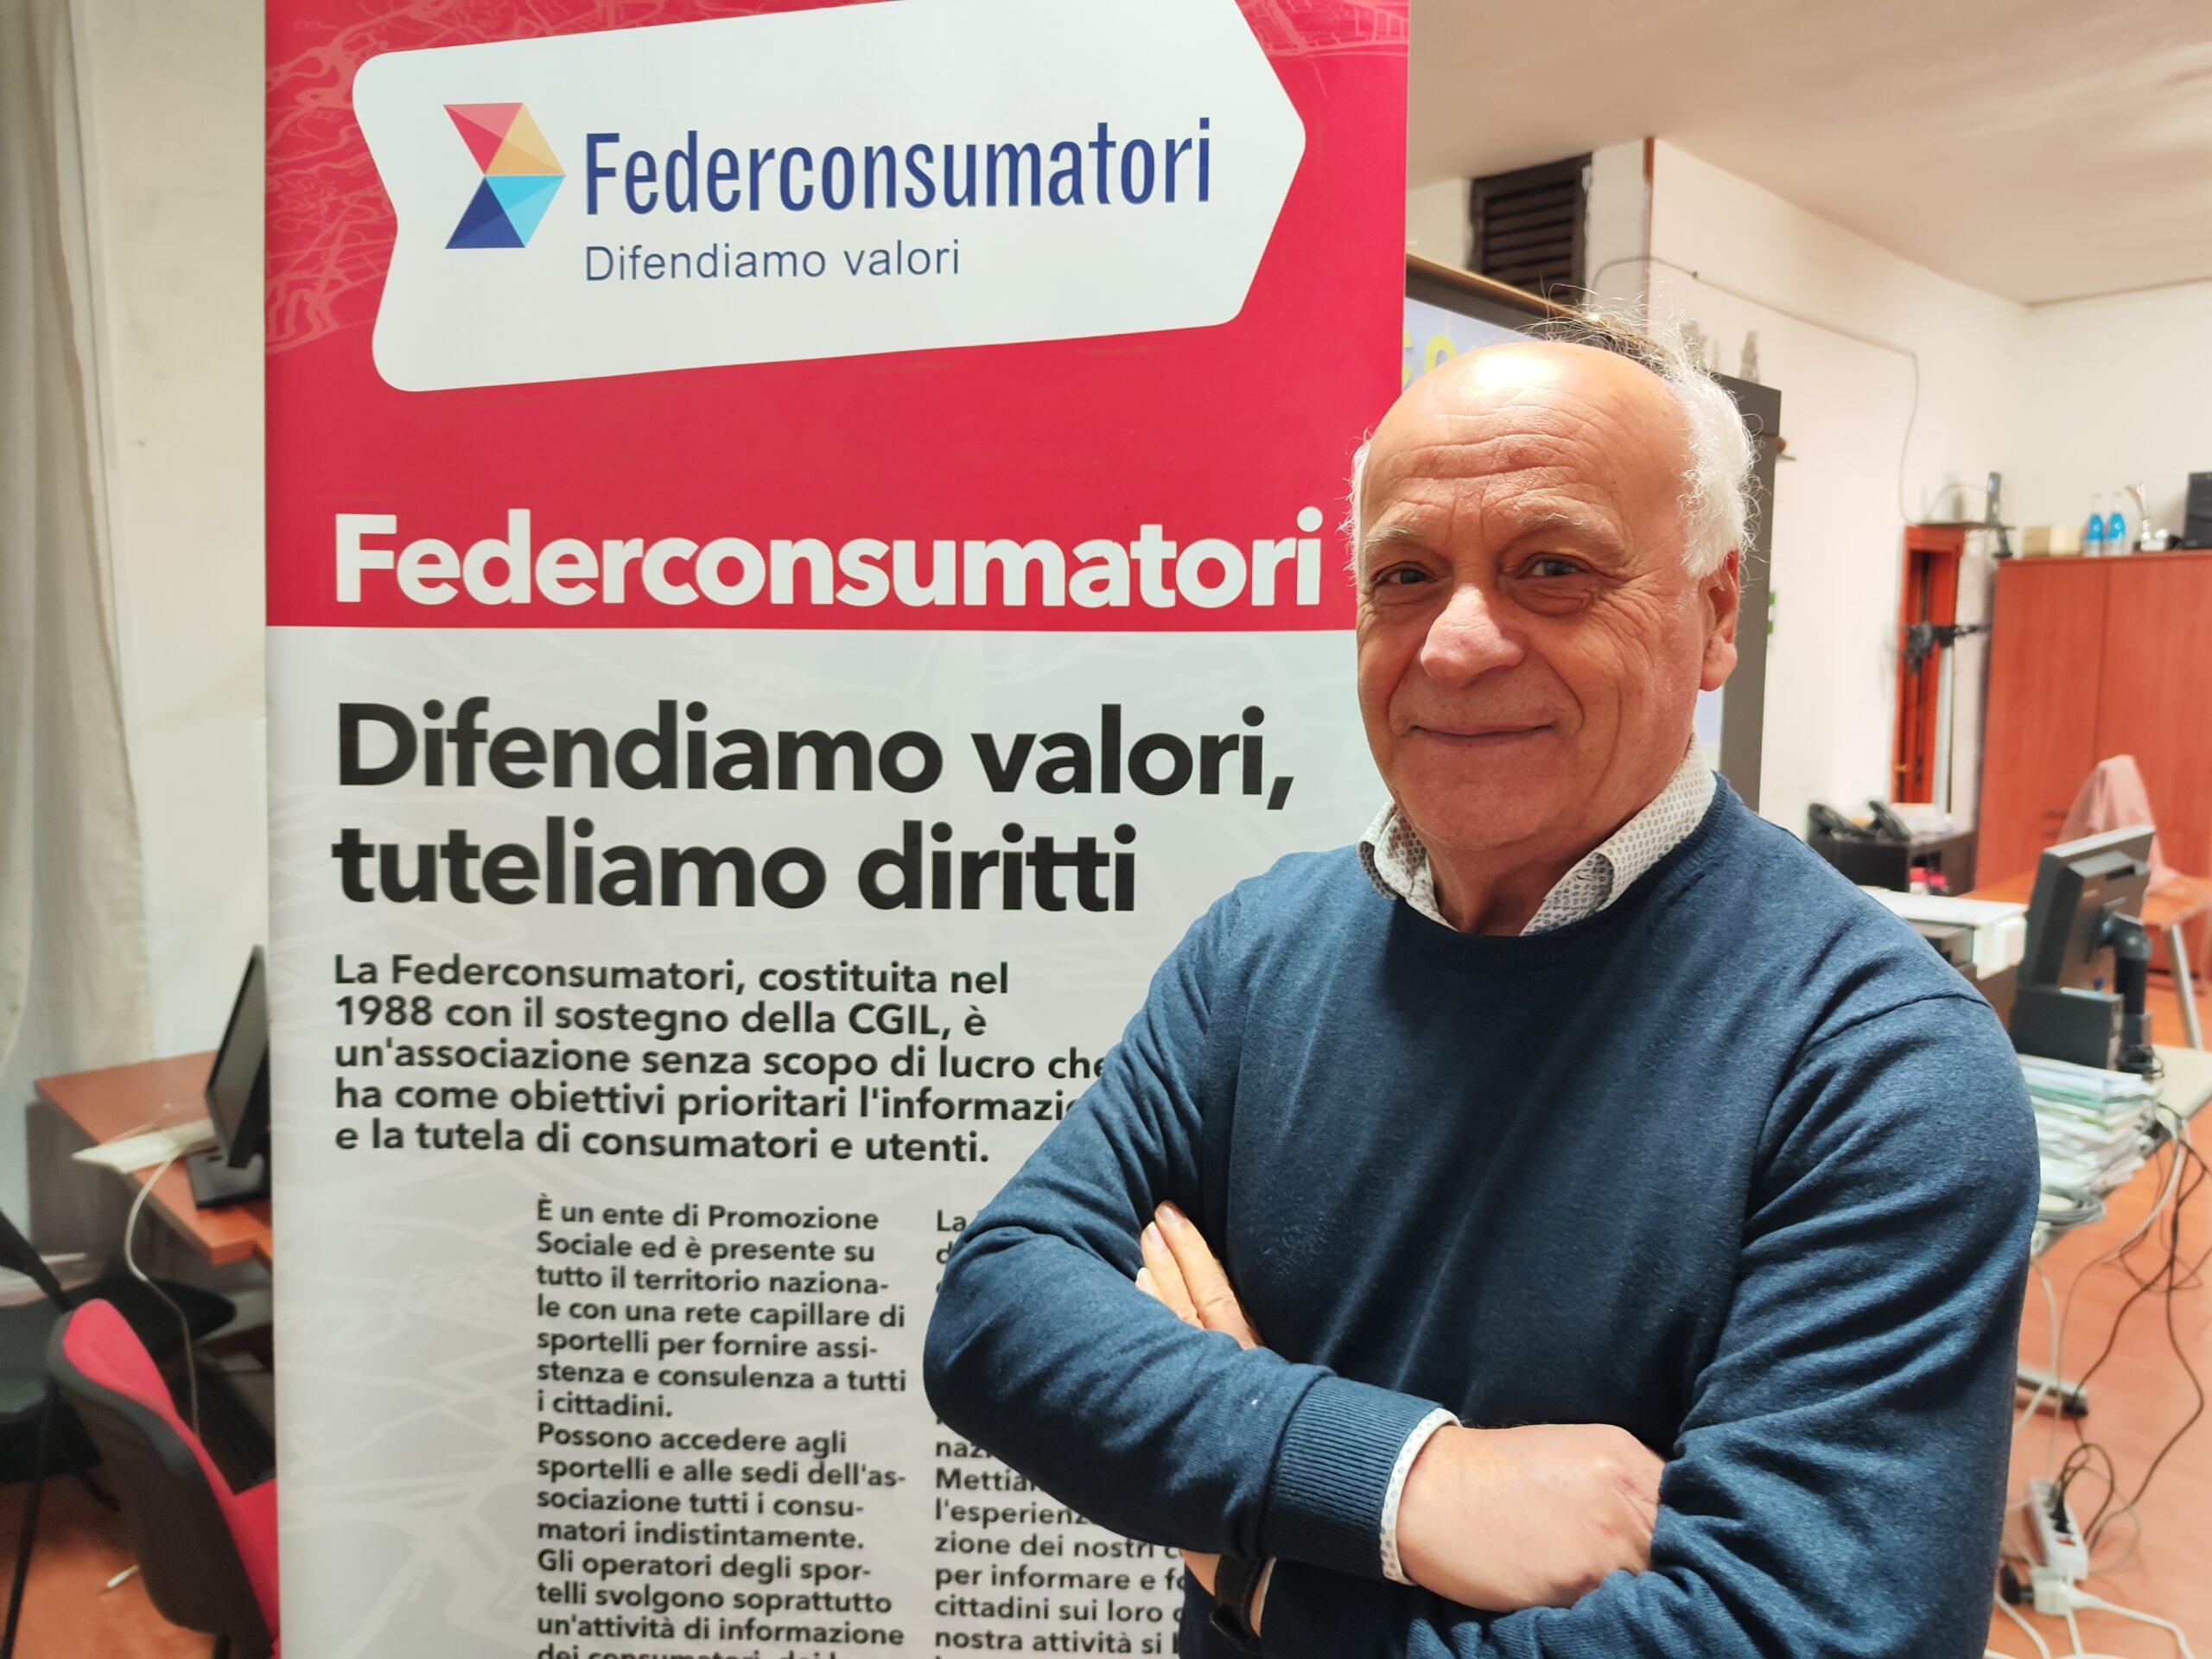 Federconsumatori Campania supporta i cittadini coinvolti nella vicenda dei mutui Euribor: "Chiedete chiarimenti presso i nostri sportelli a Napoli e in Campania"